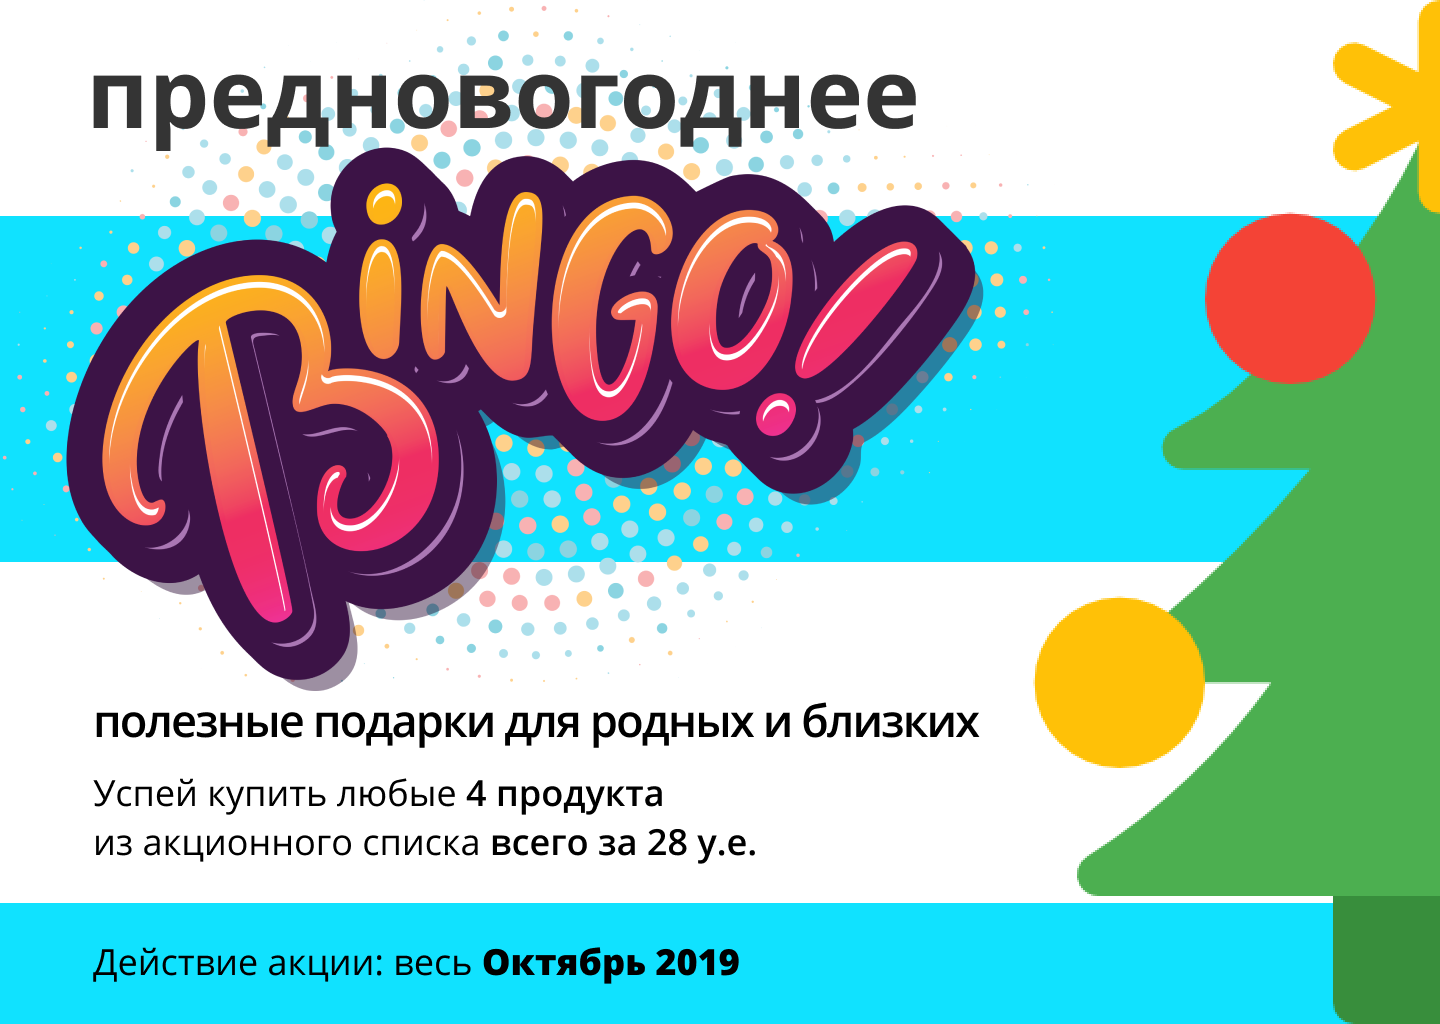 bingo10 2019